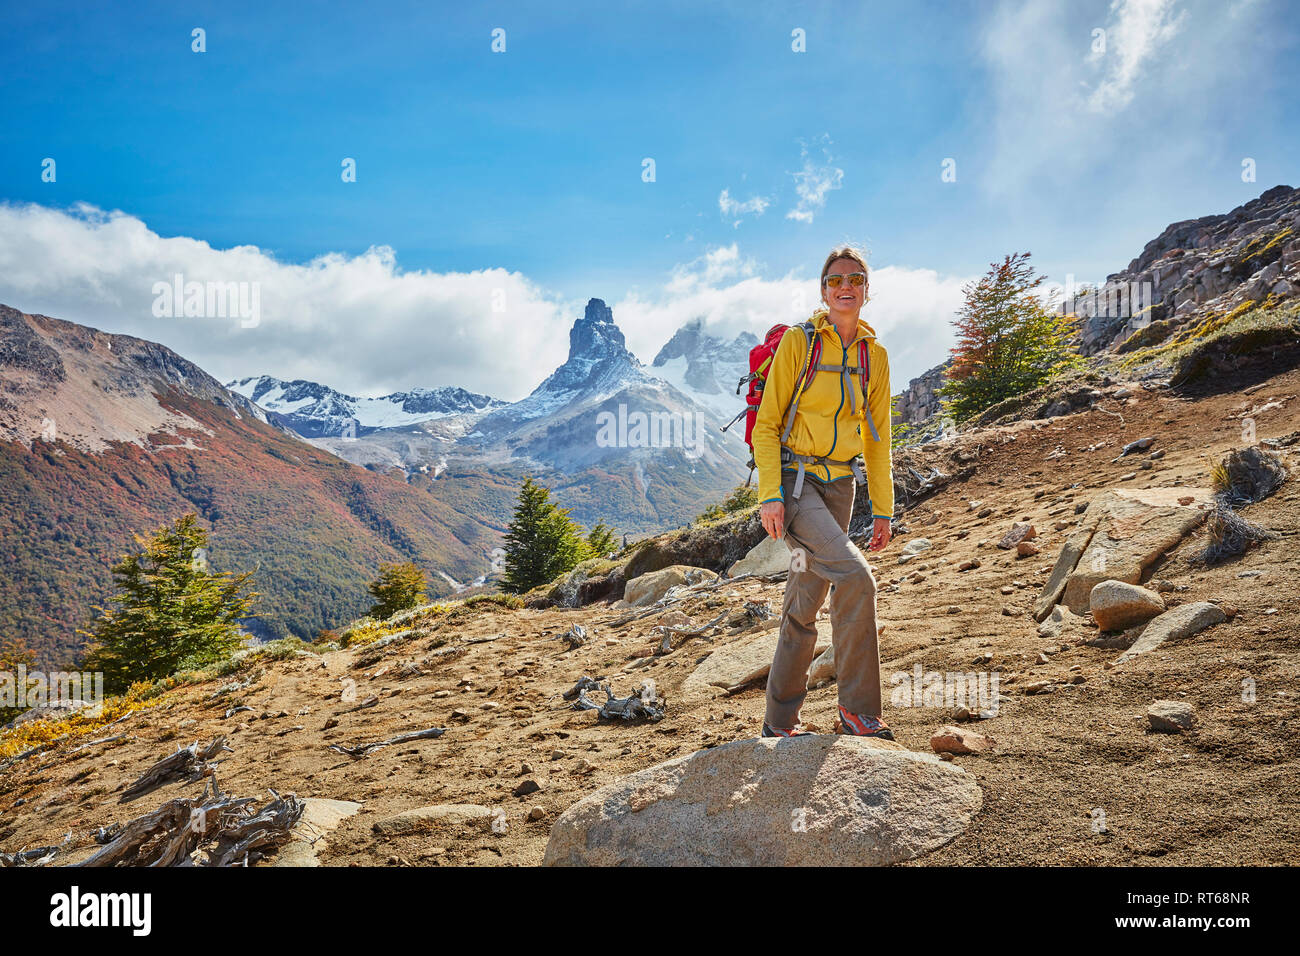 Le Chili, Cerro Castillo, femme en randonnée dans les montagnes Banque D'Images